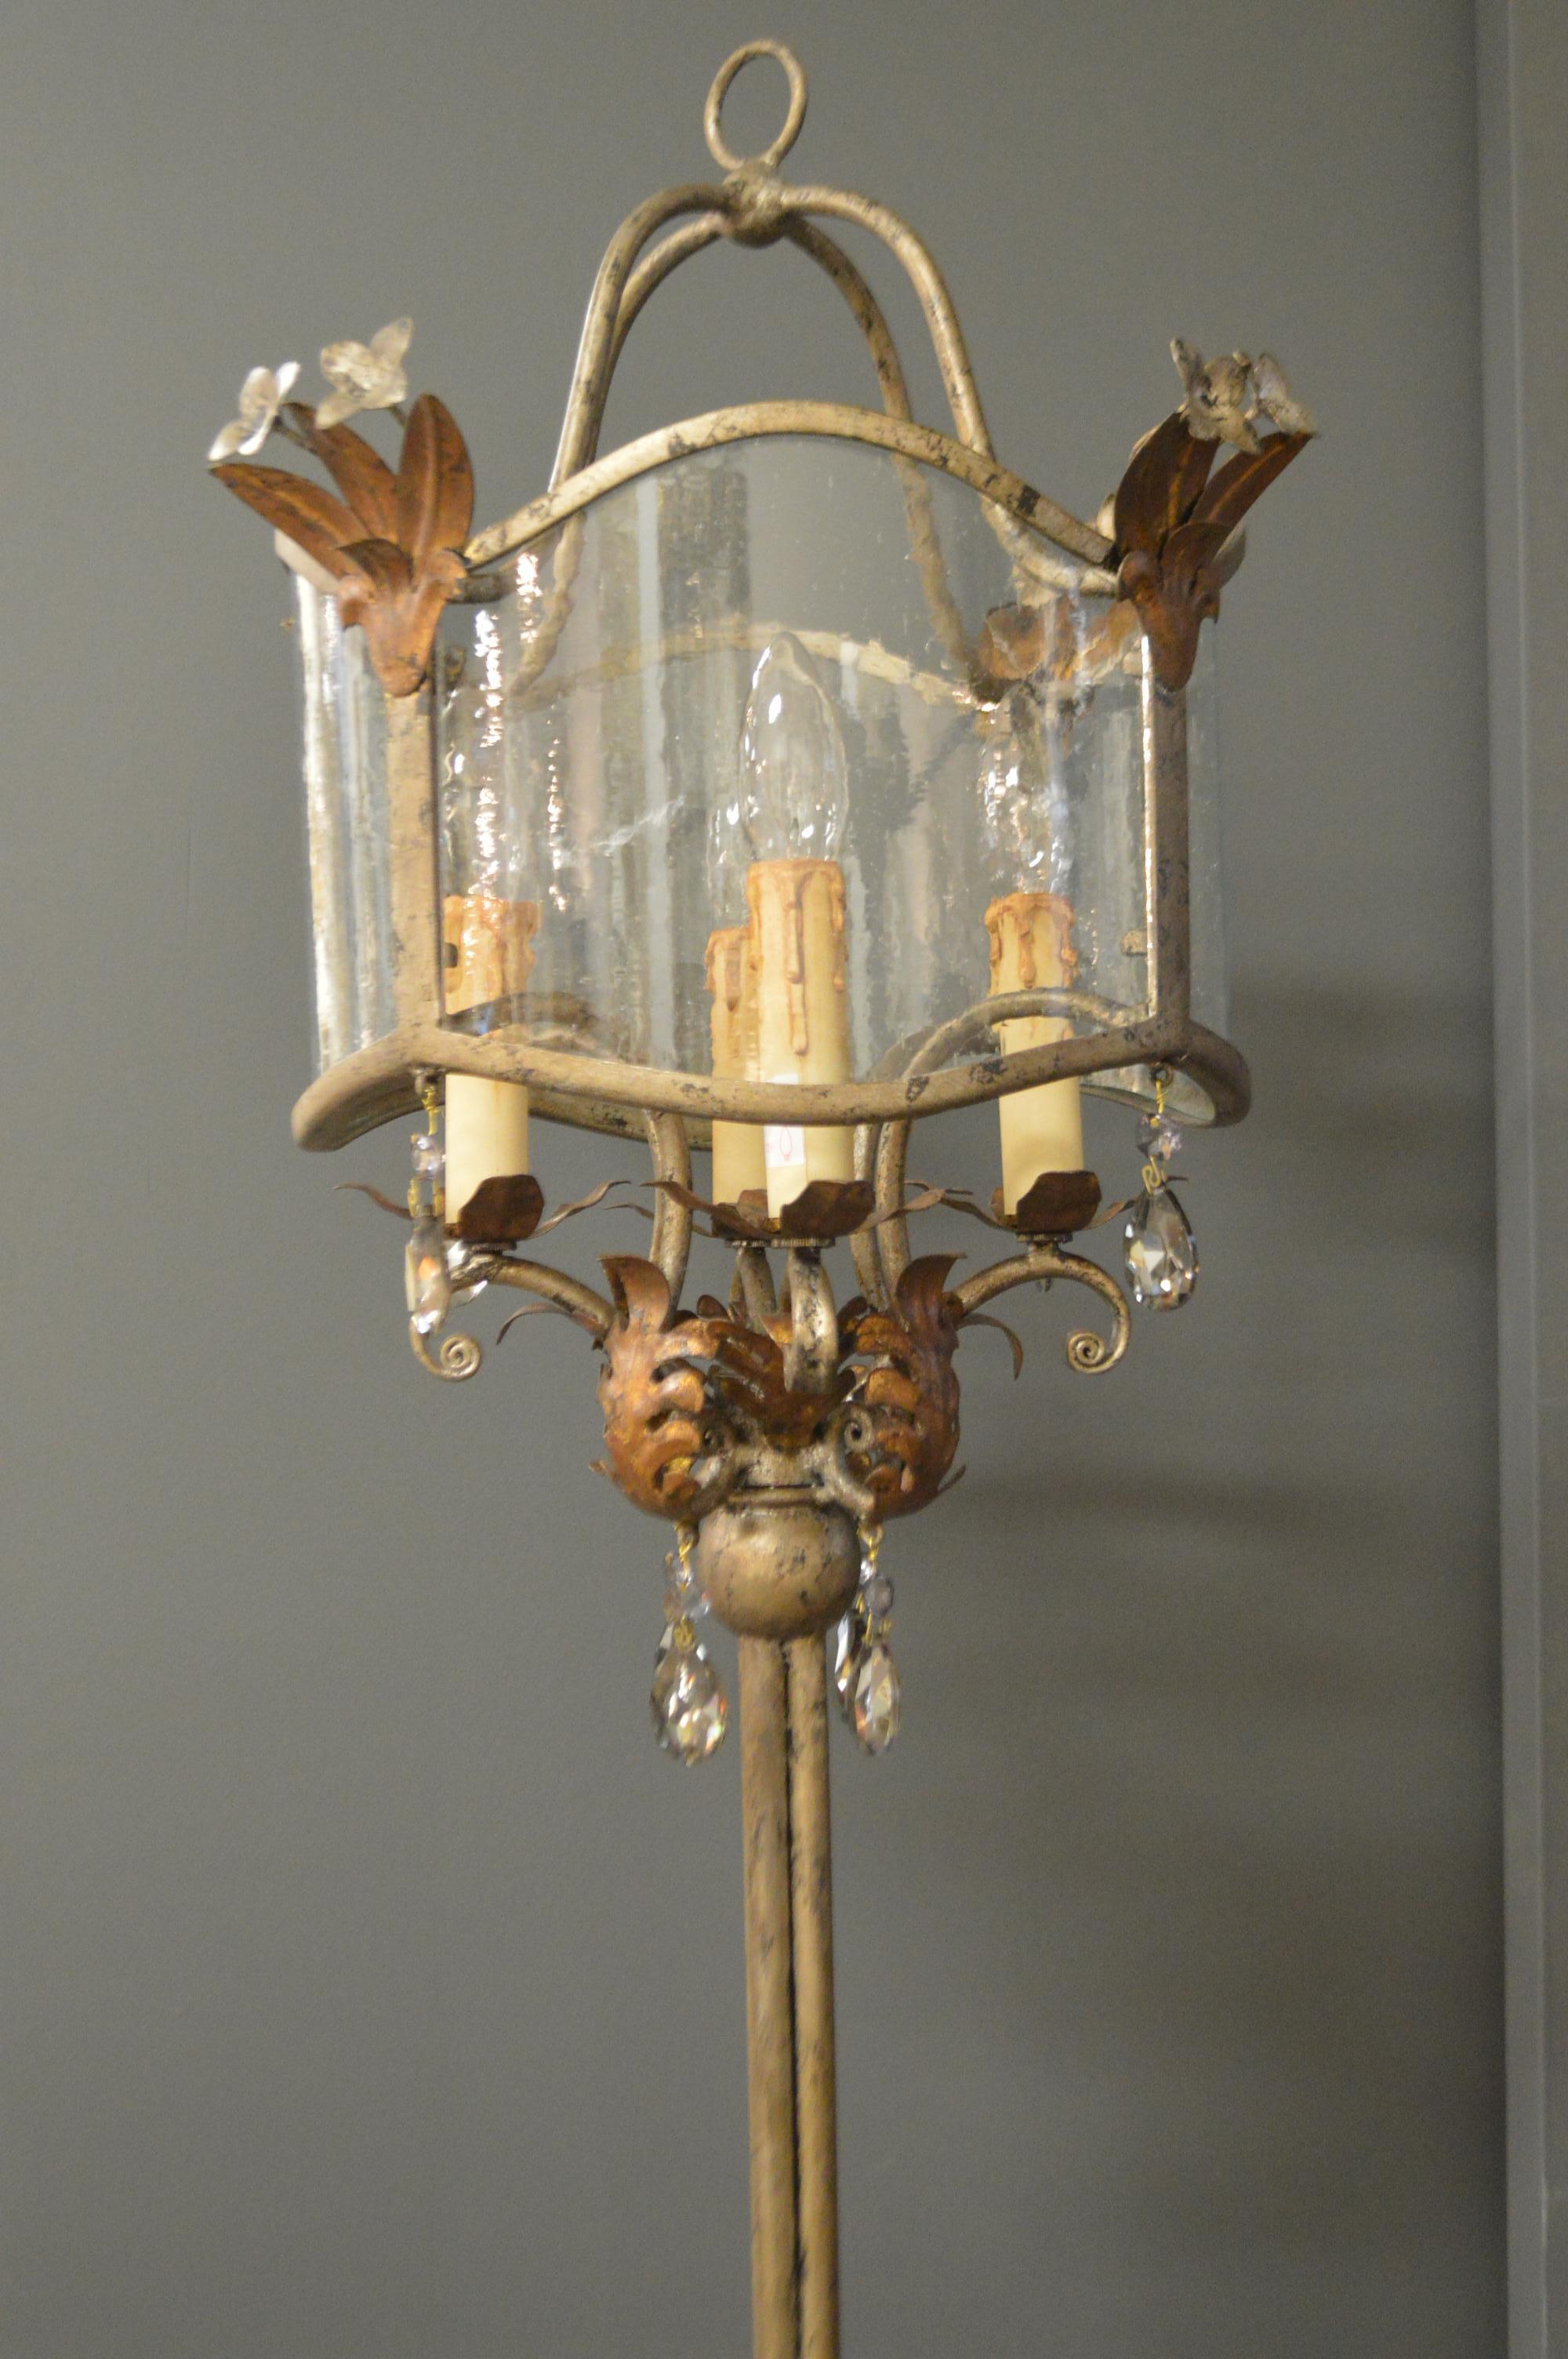 chandelier style floor lamp